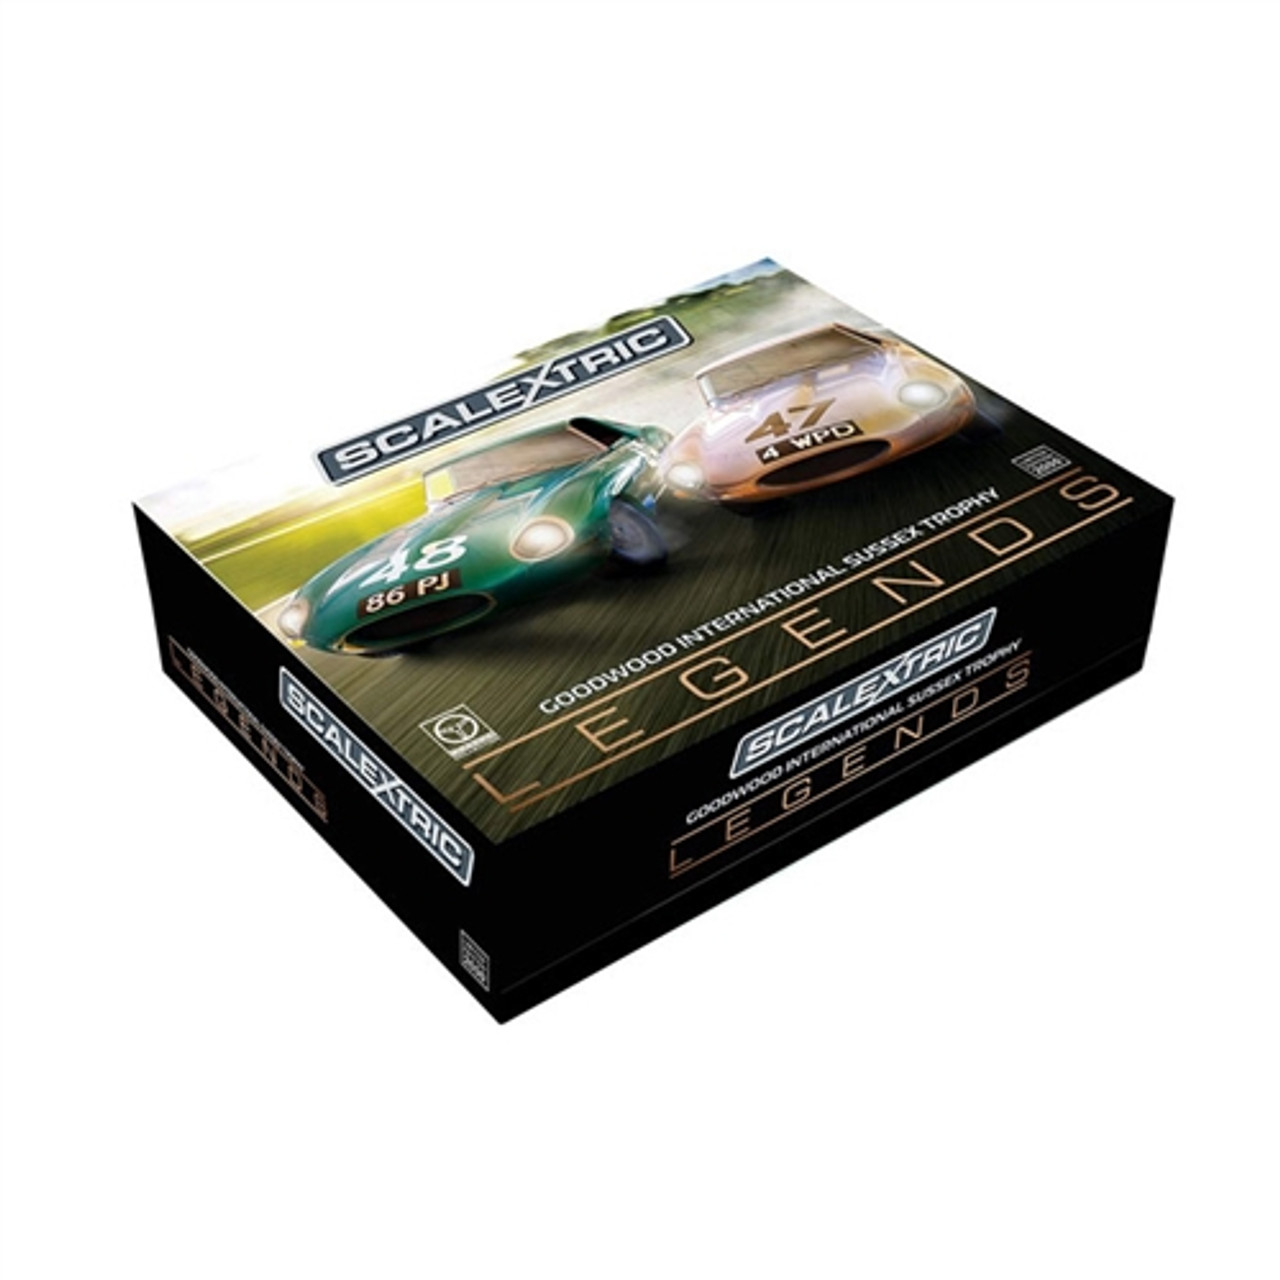  Scalextric Jaguar E Type Union Jack 1:32 Slot Race Car C3878 :  Toys & Games